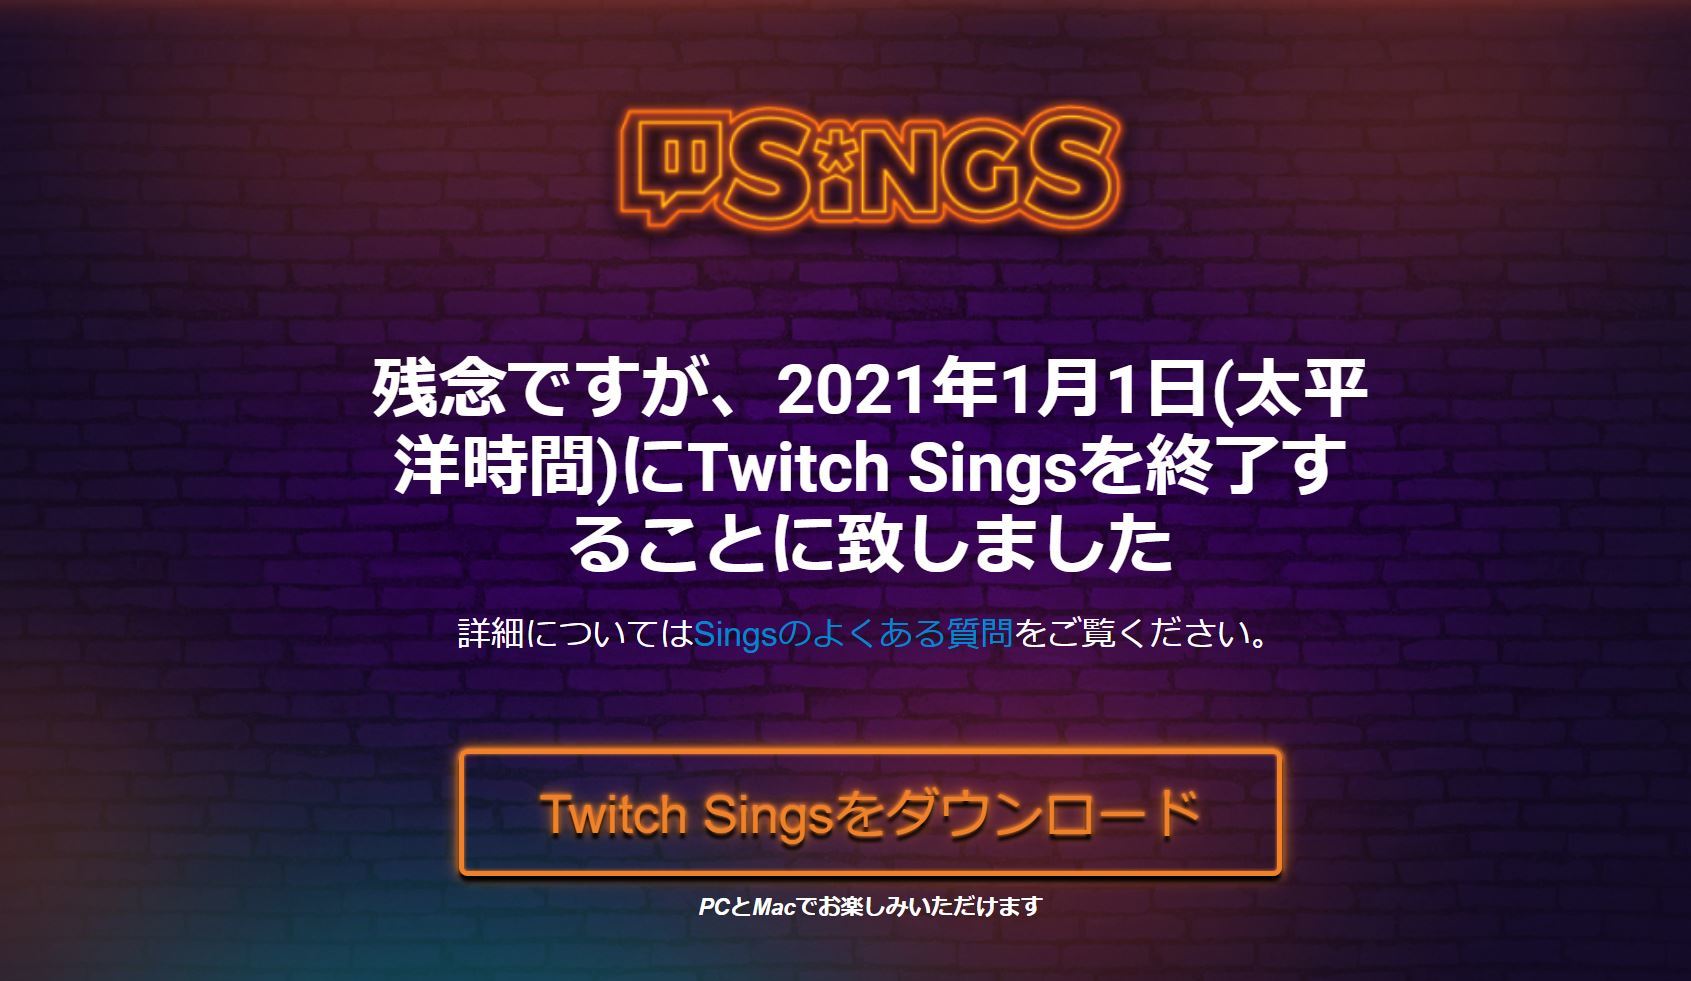 ライブカラオケサービス Twitch Sings 21年1月1日終了へ Itmedia News